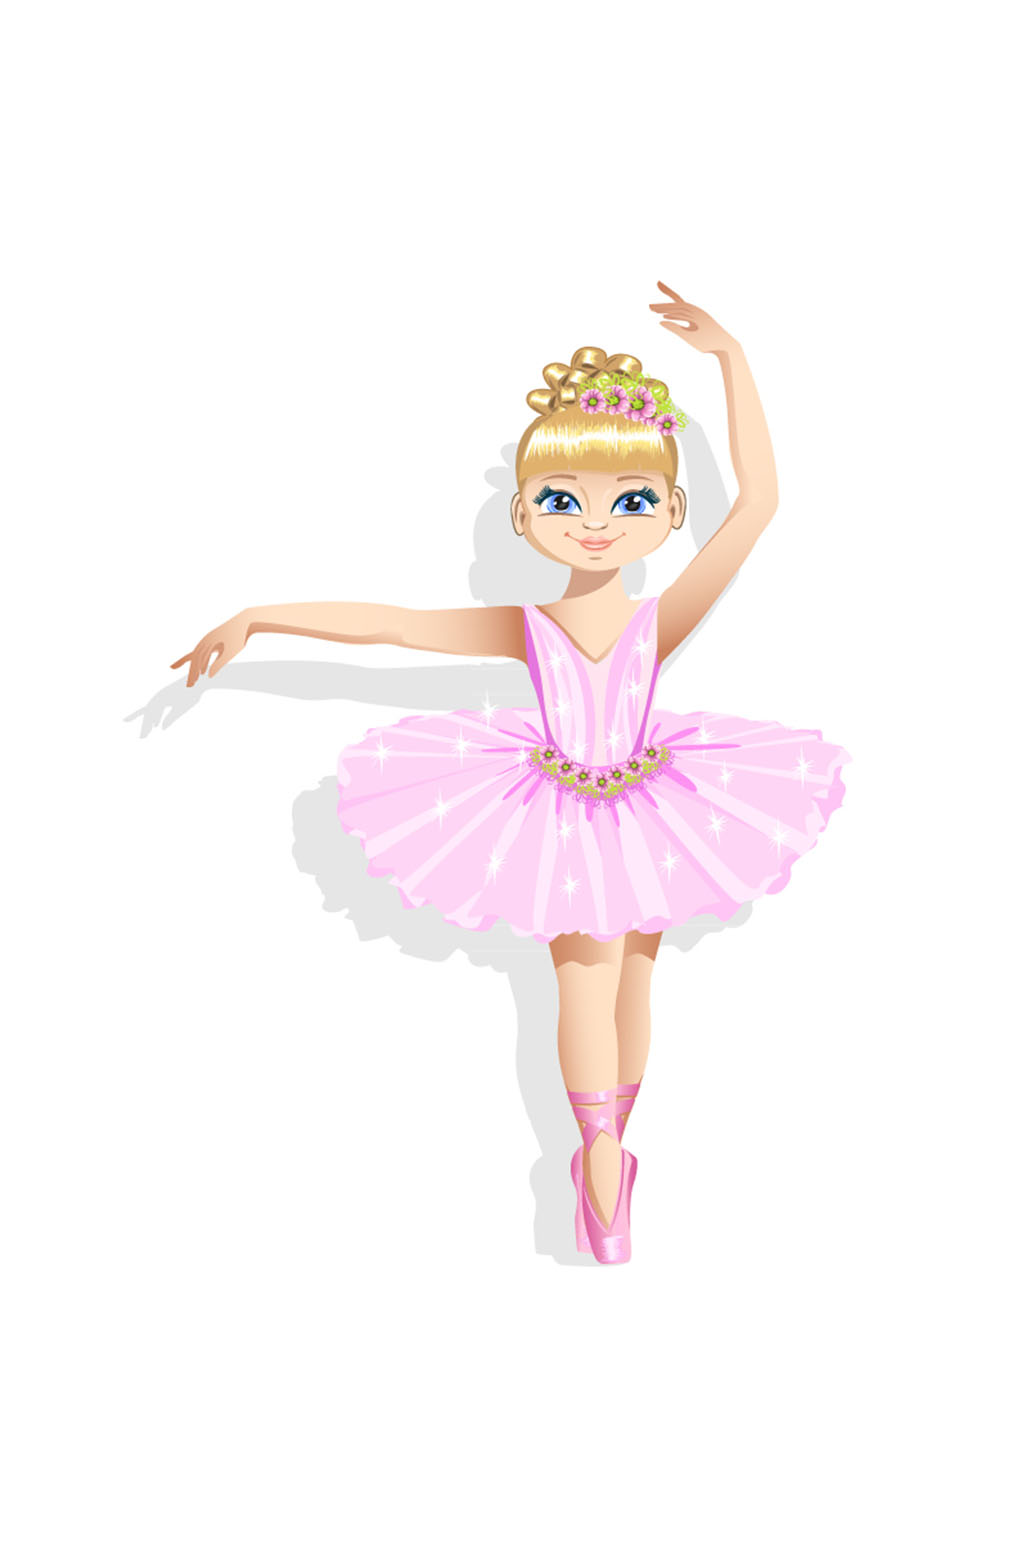 粉色裙装芭蕾舞女孩矢量图素材